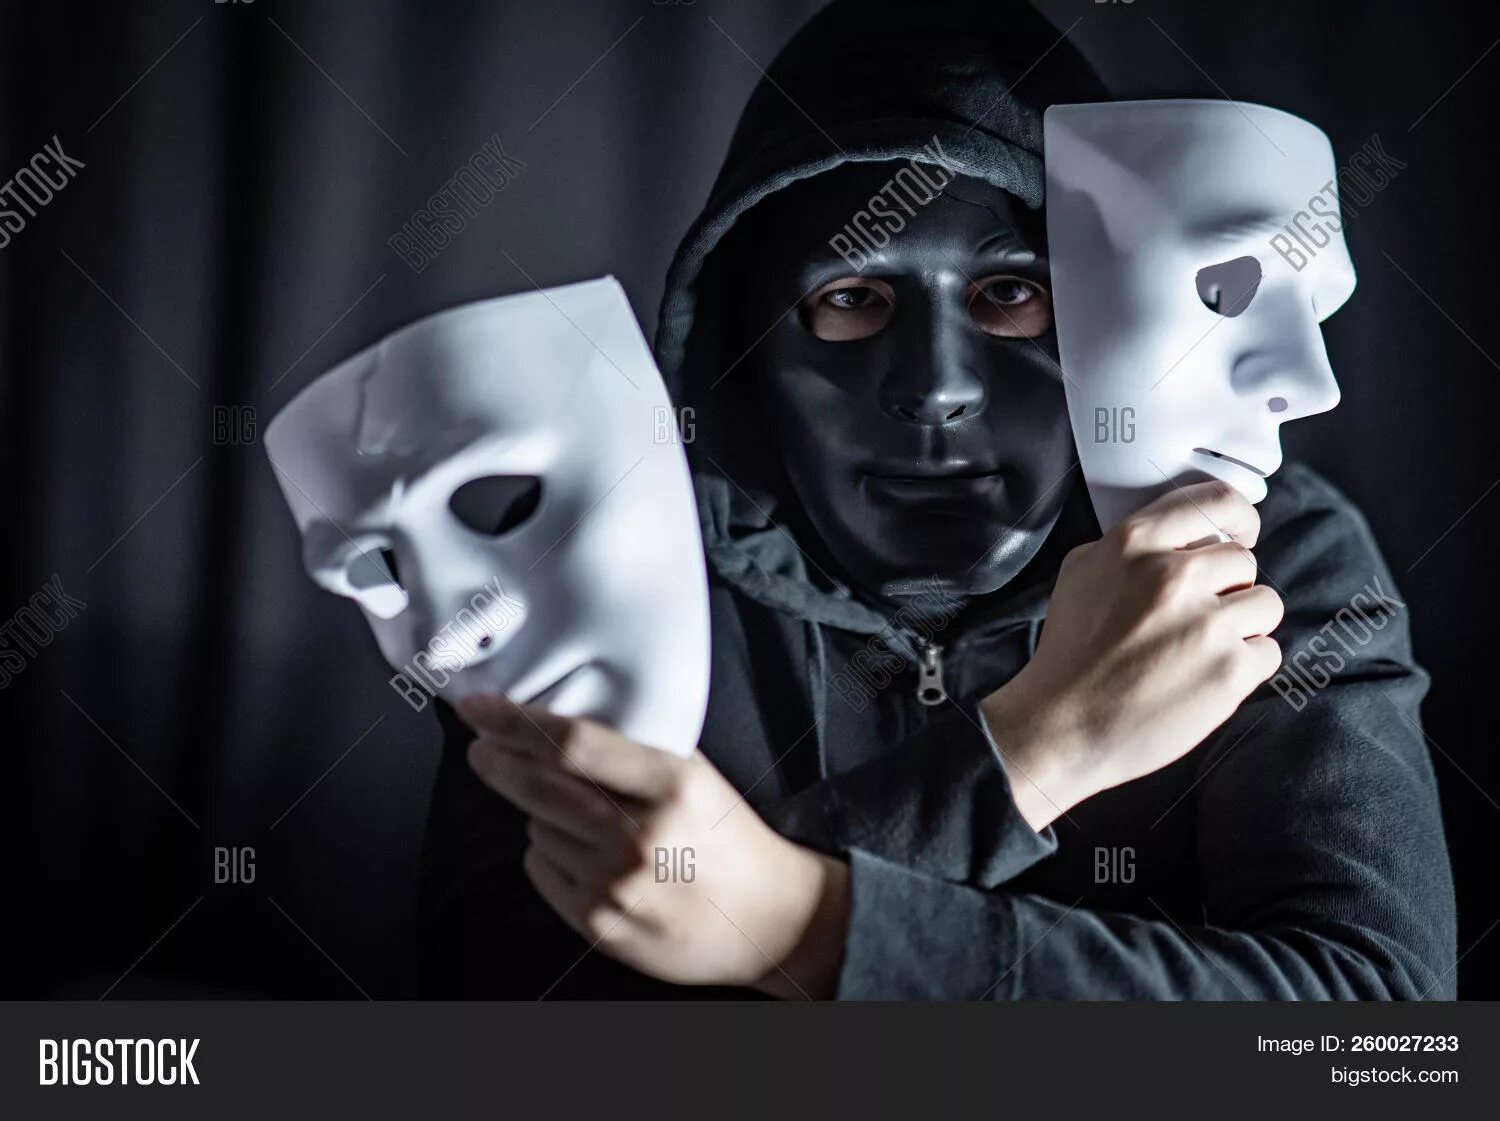 Человек в маске. Человек надевает маску. Человек в театральной маске. Человек в белой маске.